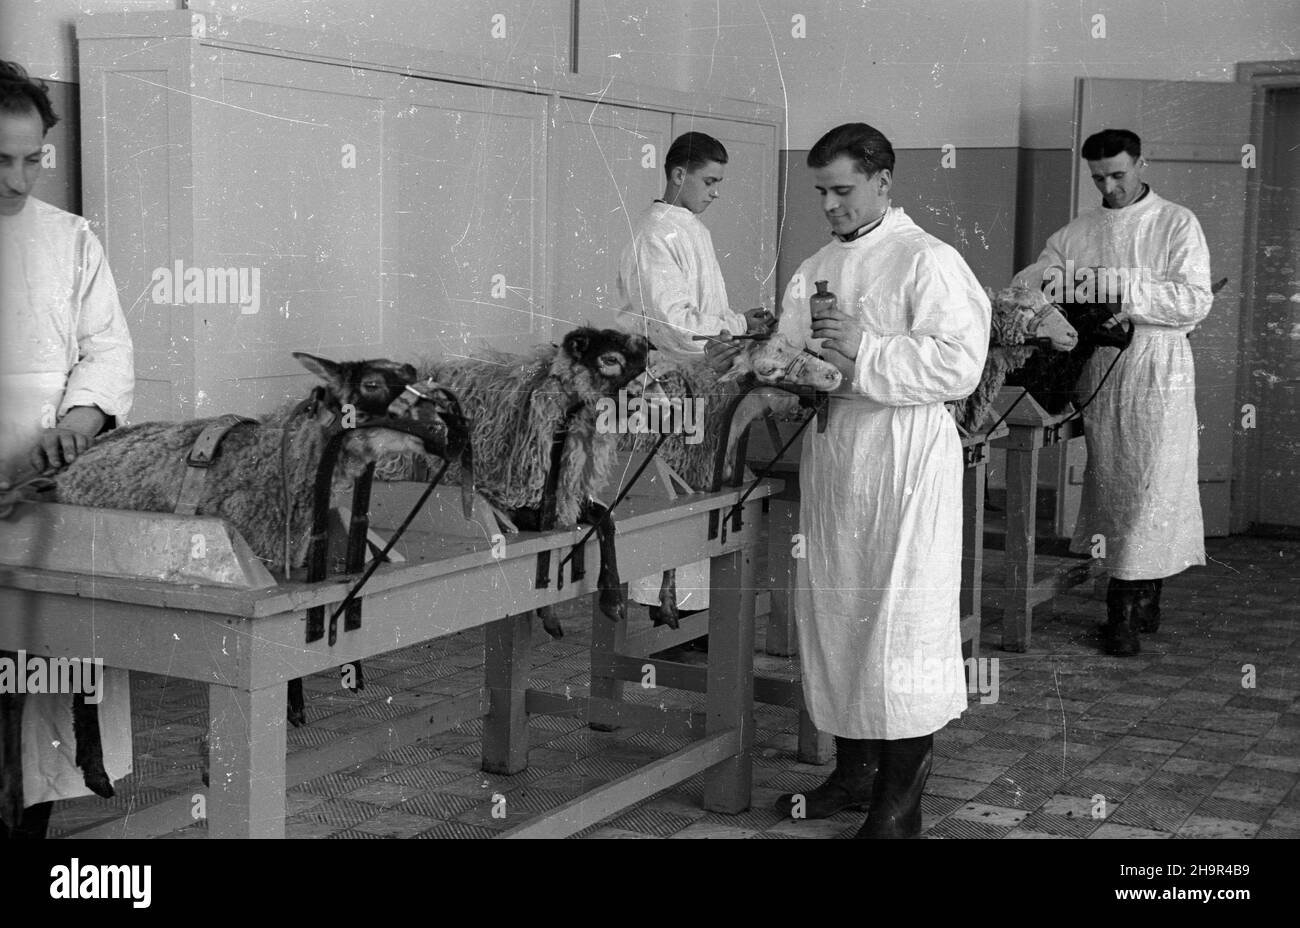 Pu³awy, 1949-04. Pañstwowy Instytut Weterynaryjny. W pocz¹tkach 1949 roku w Instytucie powsta³ Zak³ad Produkcji Szczepionki przeciwko WœciekliŸnie. Nz. eksperymenty na owcach. msa  PAP    Dok³adny dzieñ wydarzenia nieustalony.      Pulawy, April 1949. The State Veterinary Institute.At the start of 1949 the Institute opened the Anti-Rabies production Plant. Pictured: experiments on sheeps.  msa  PAP Stock Photo